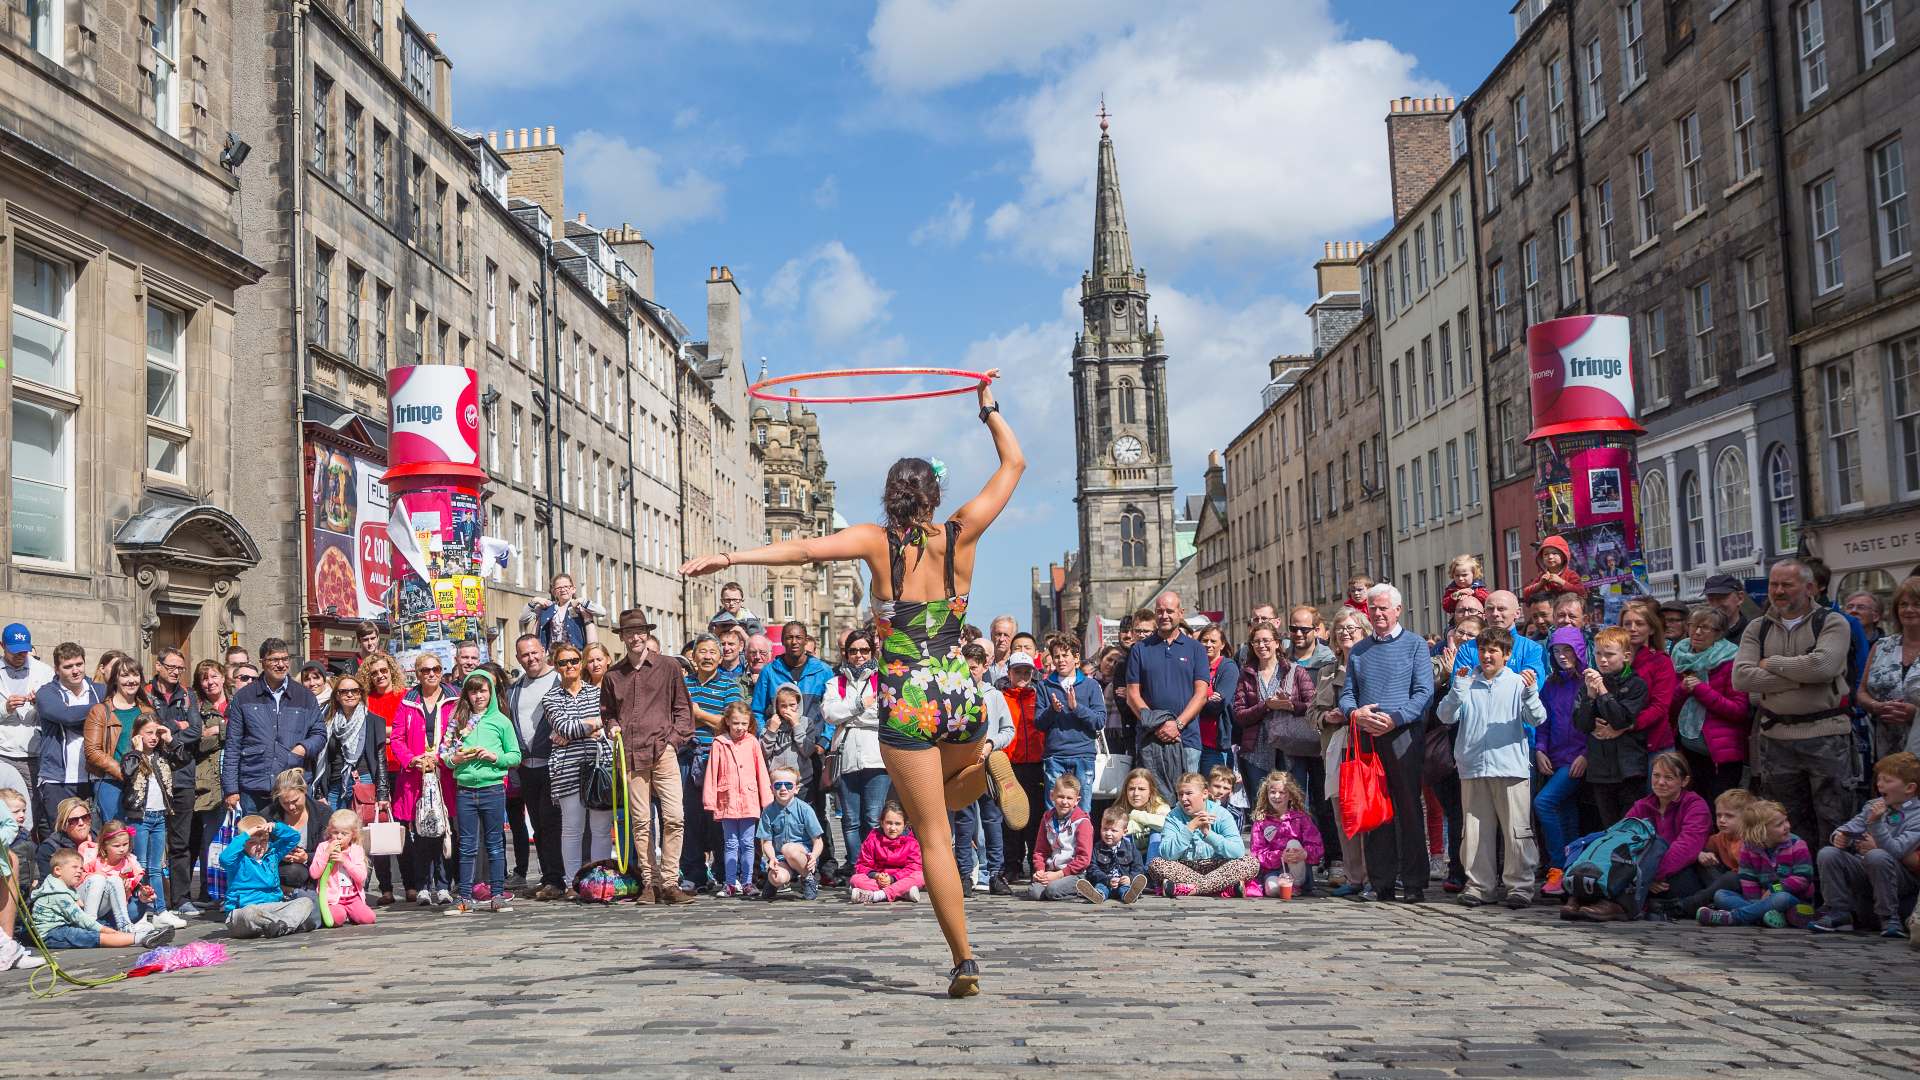 Performer on the Royal Mile during Edinburgh's Fringe festival, Scotland